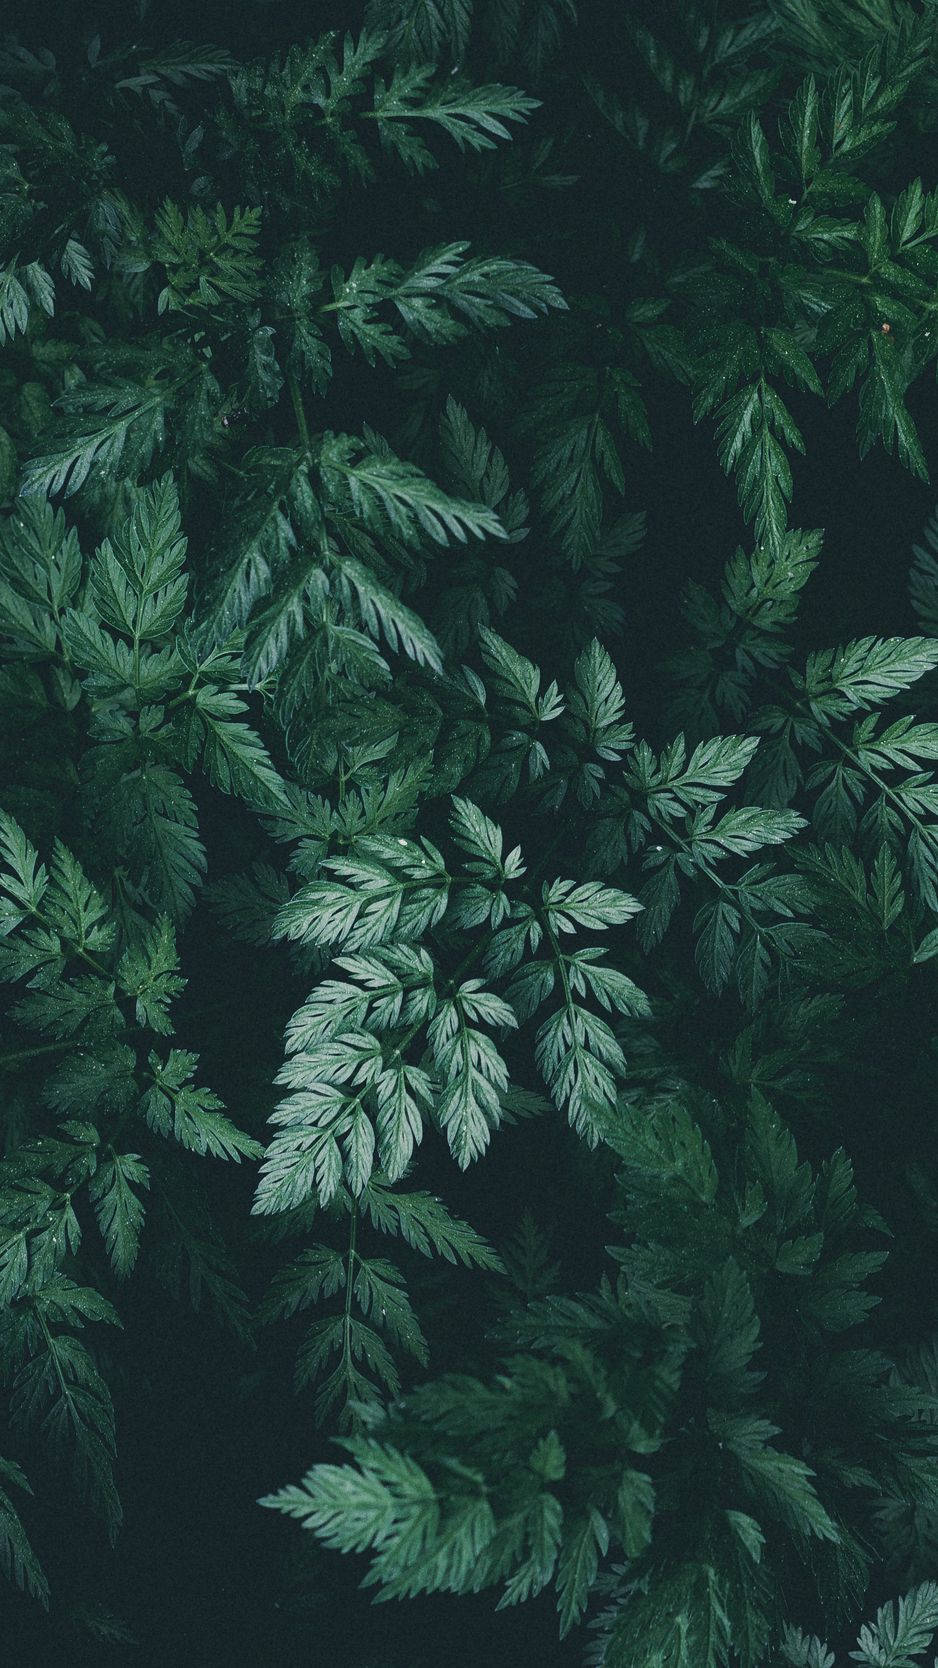 Zeigensie Ihren Einzigartigen Stil Mit Diesem Wunderschönen Naturinspirierten Pflanzen-iphone-hintergrund. Wallpaper